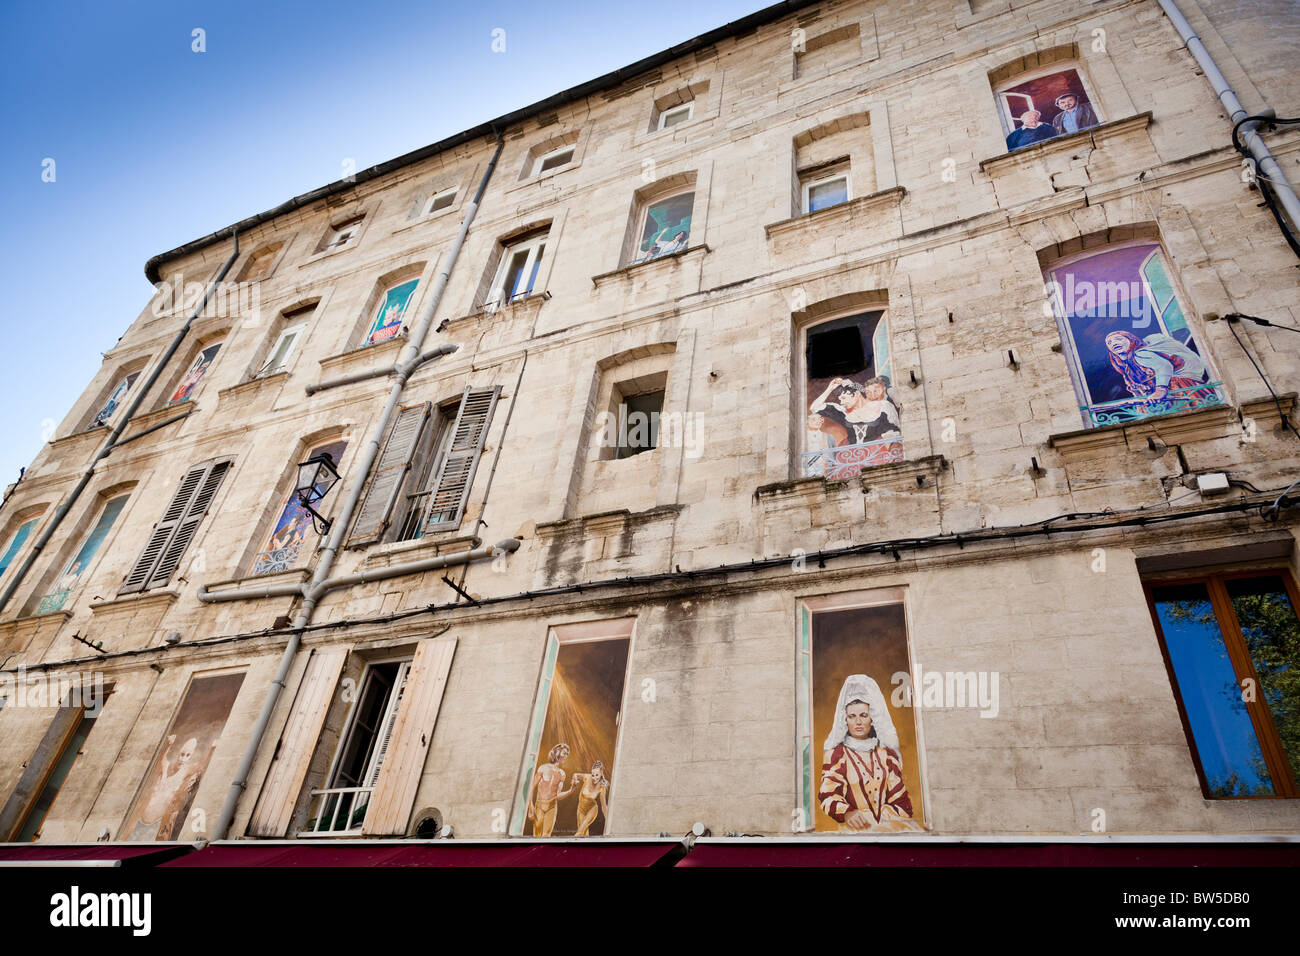 Peintures en trompe l'oeil l'égayer de windows cette vieille maison à Avignon, Vaucluse, France. Banque D'Images